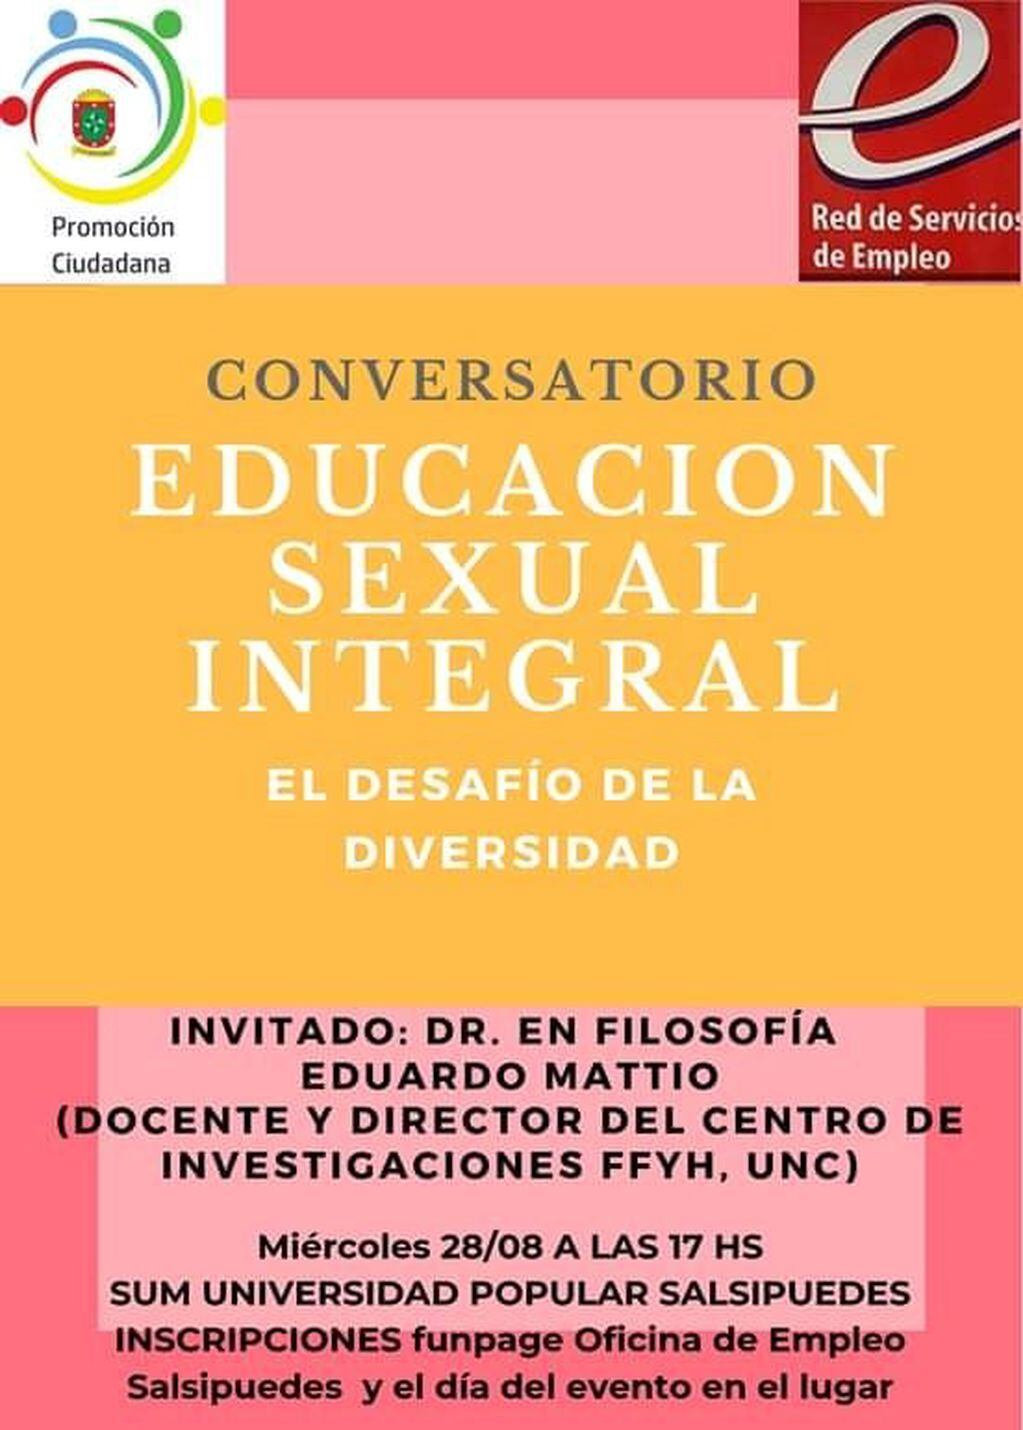 Conversatorio "Educación Sexual Integral: El Desafio de la Diversidad".